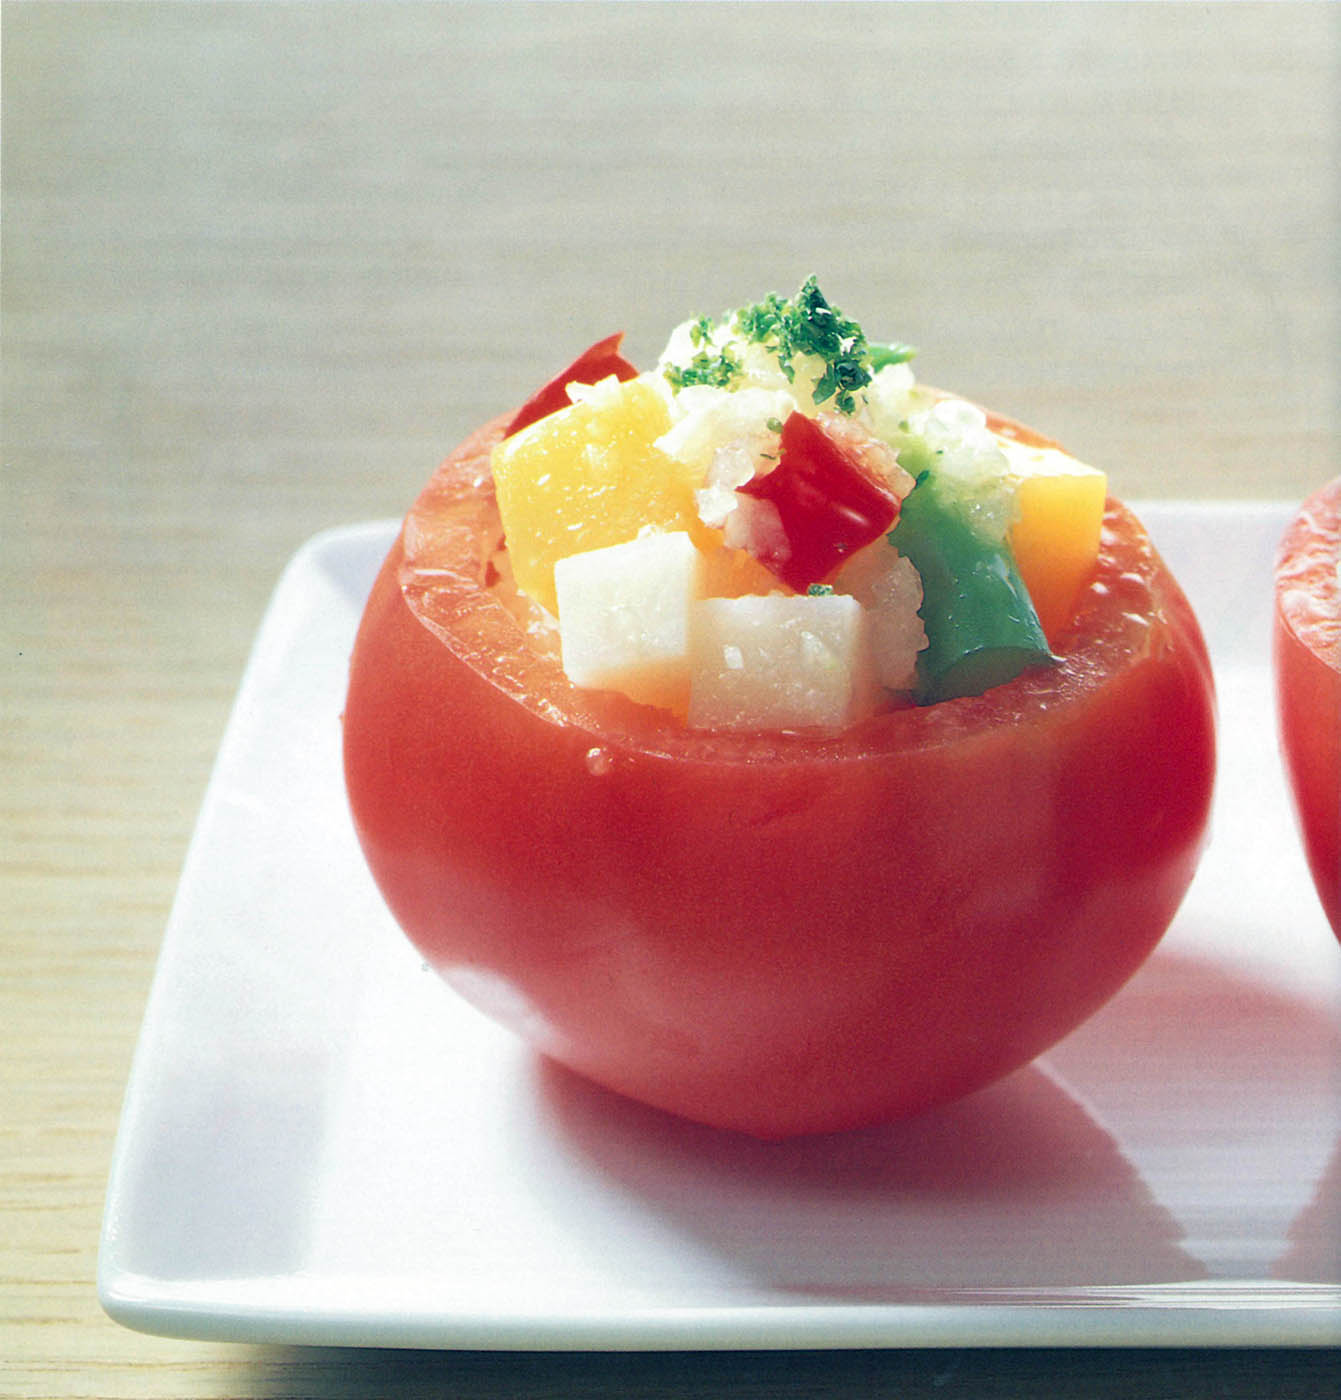 21-トマトカップの寒天サラダ-ためして寒天